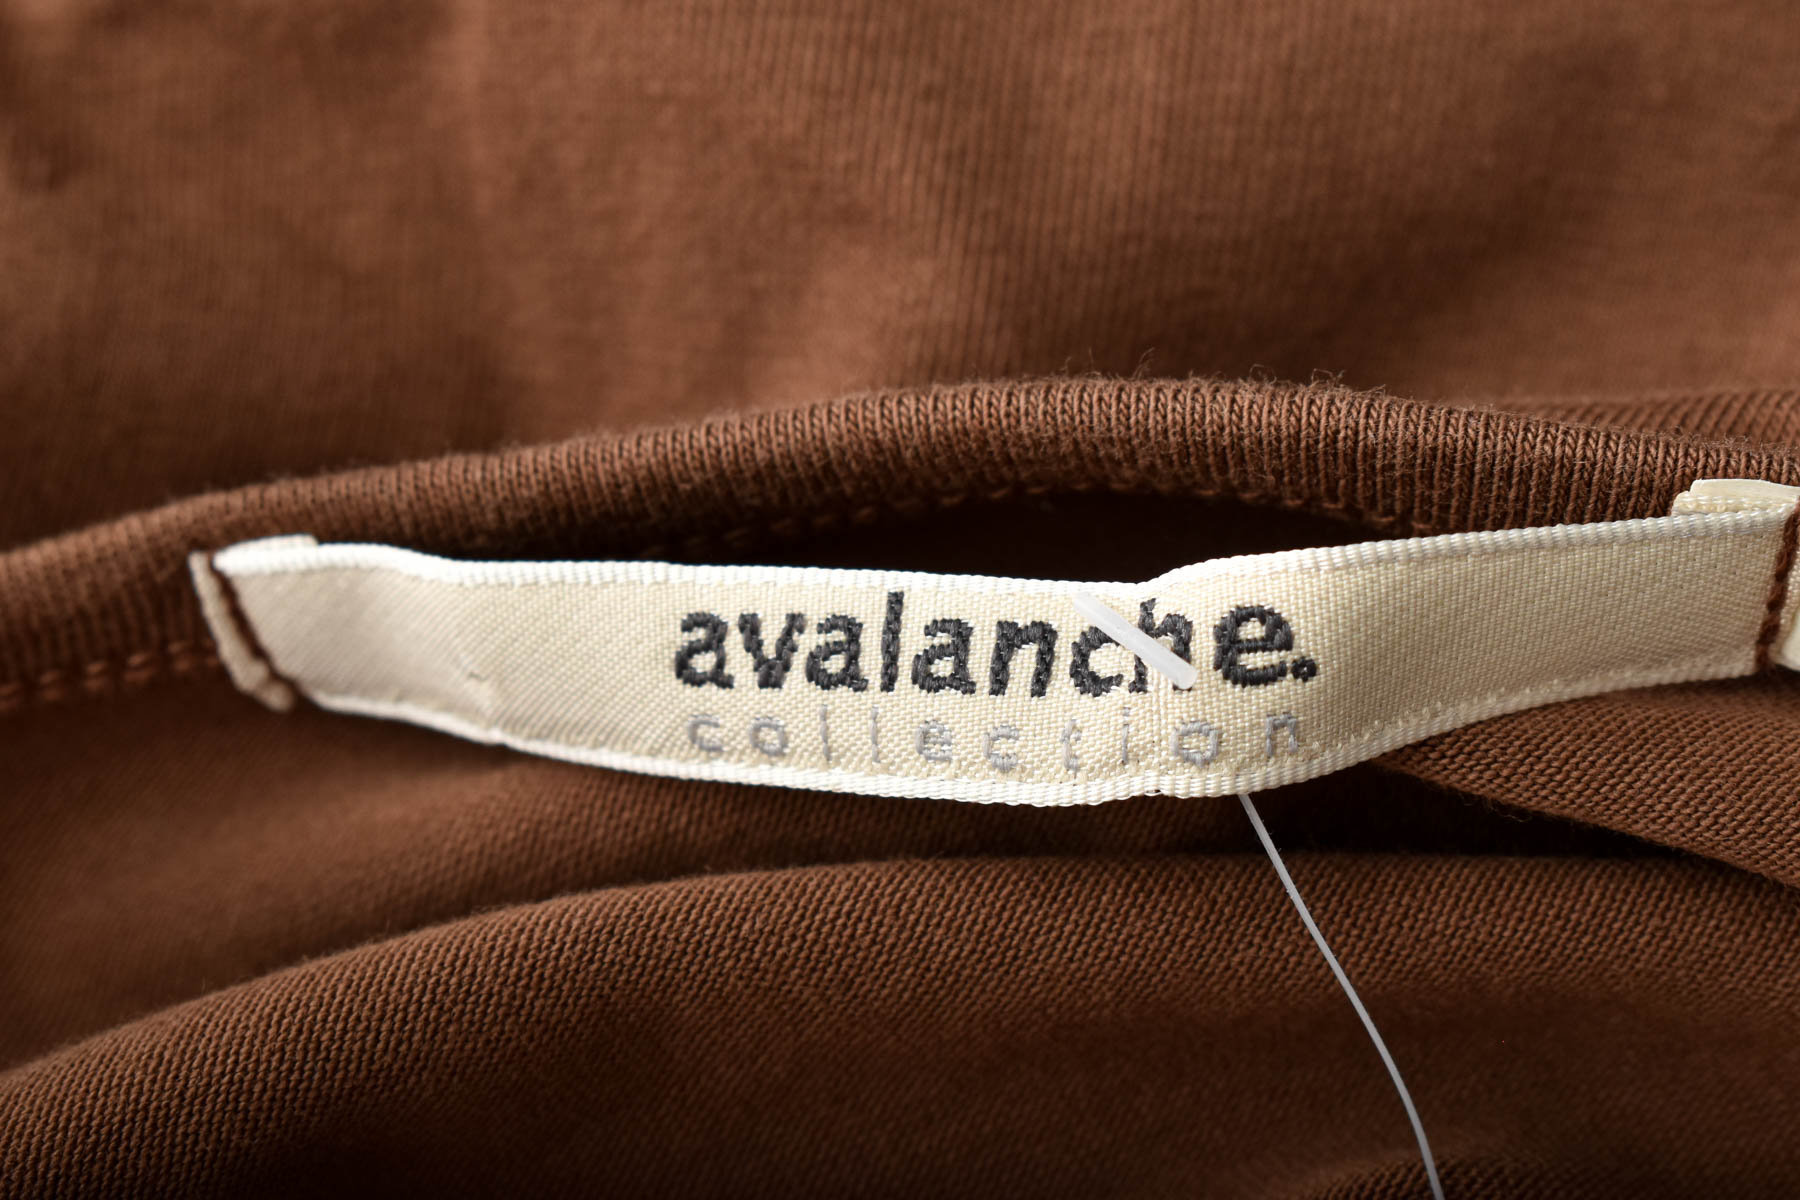 Women's blouse - Avalanche - 2